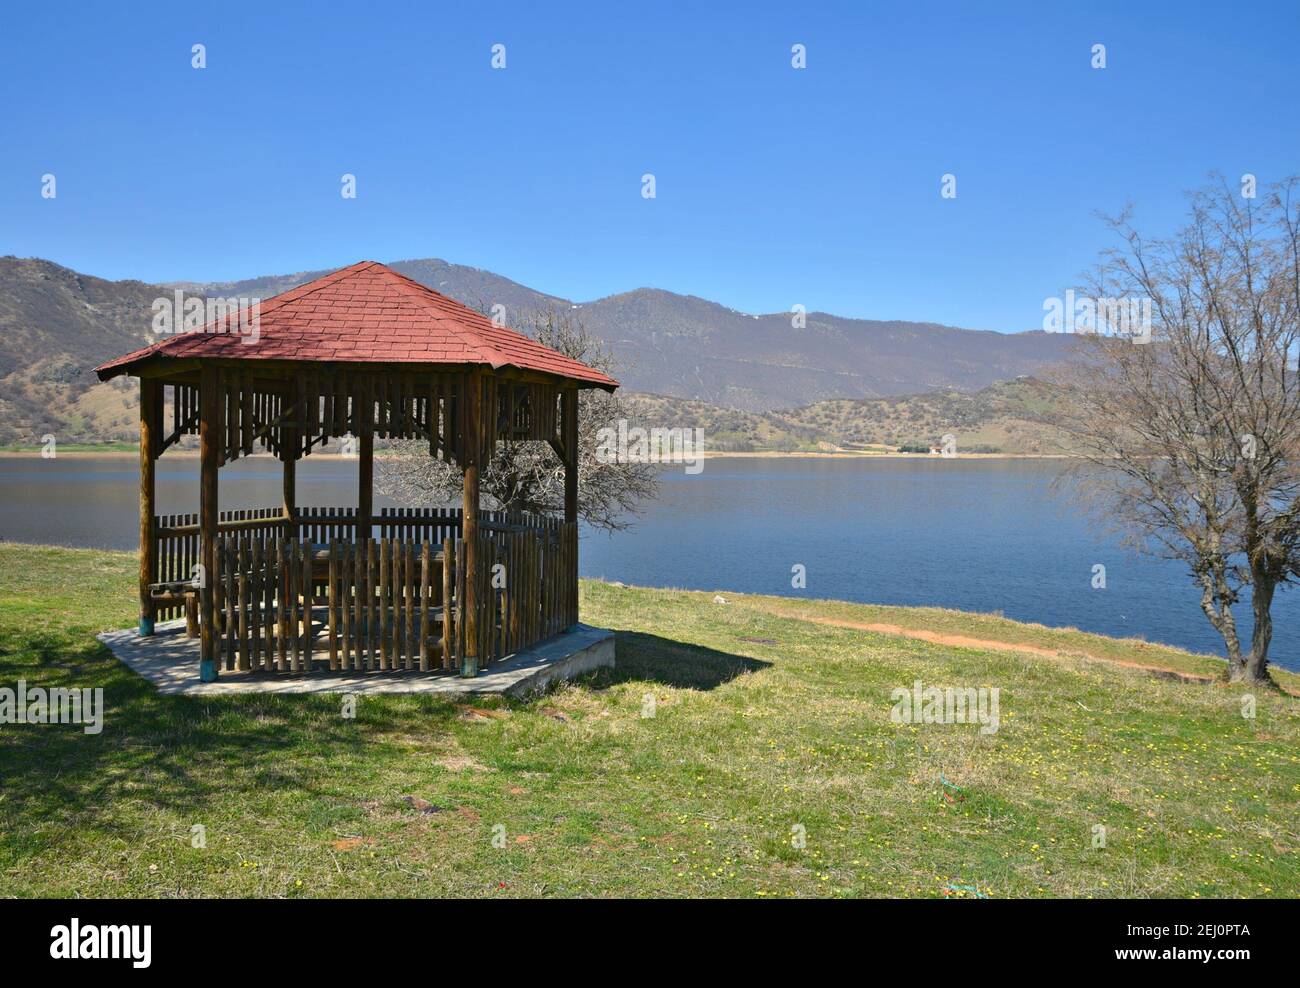 Landschaft mit Panoramablick auf einen hölzernen Pavillon am Ufer des Sees Vegoritida, der natürliche See von Florina in Westmakedonien Griechenland. Stockfoto